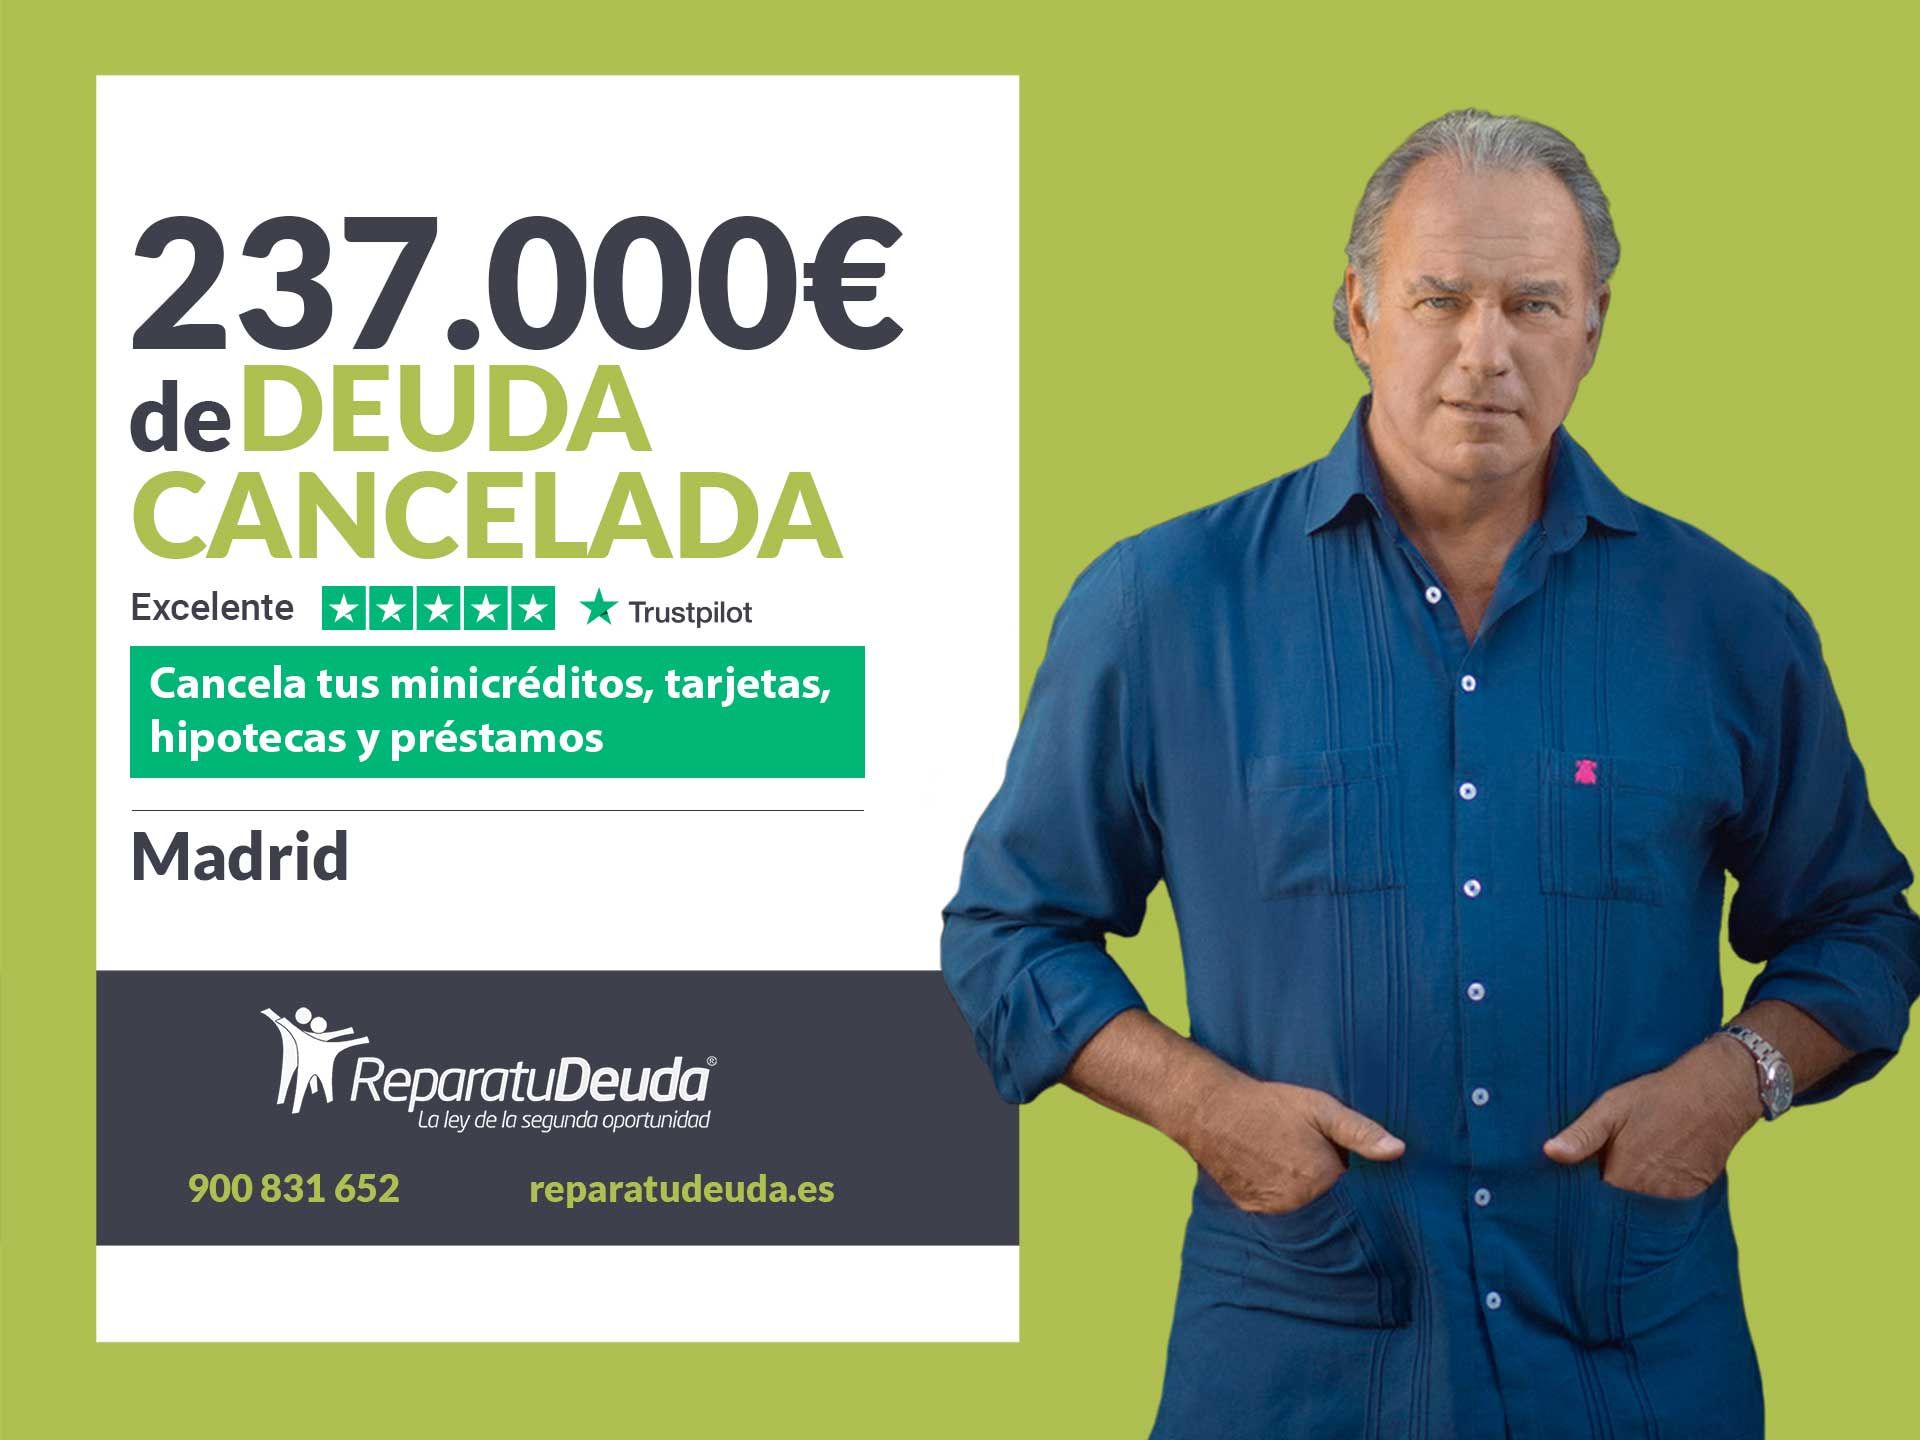 Repara tu Deuda Abogados cancela 237.000? en Madrid con la Ley de Segunda Oportunidad